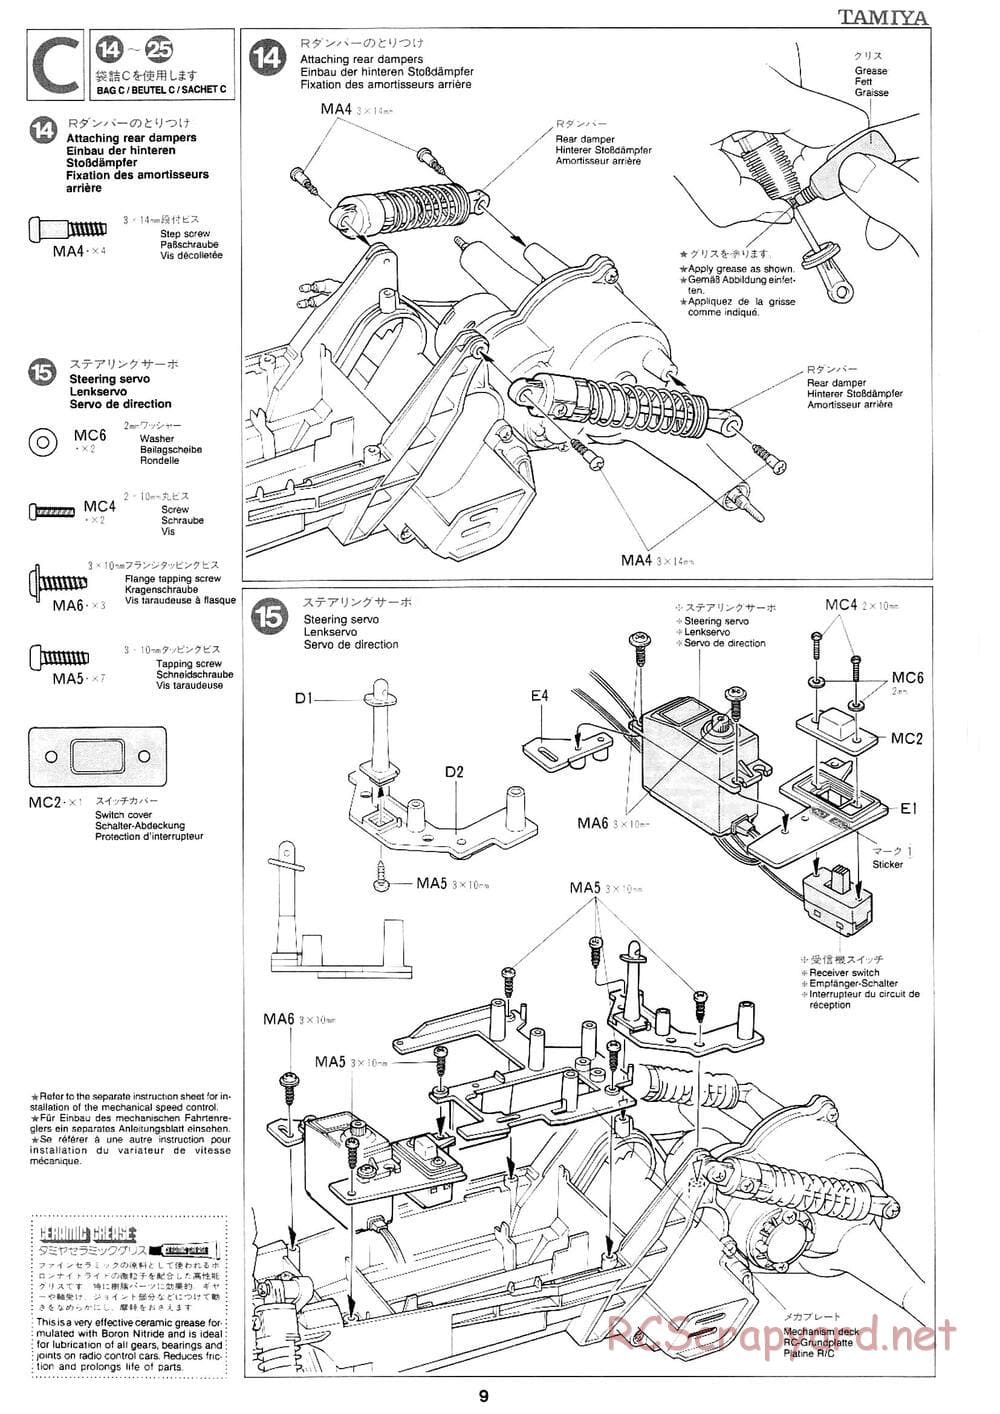 Tamiya - Mad Bull Chassis - Manual - Page 9